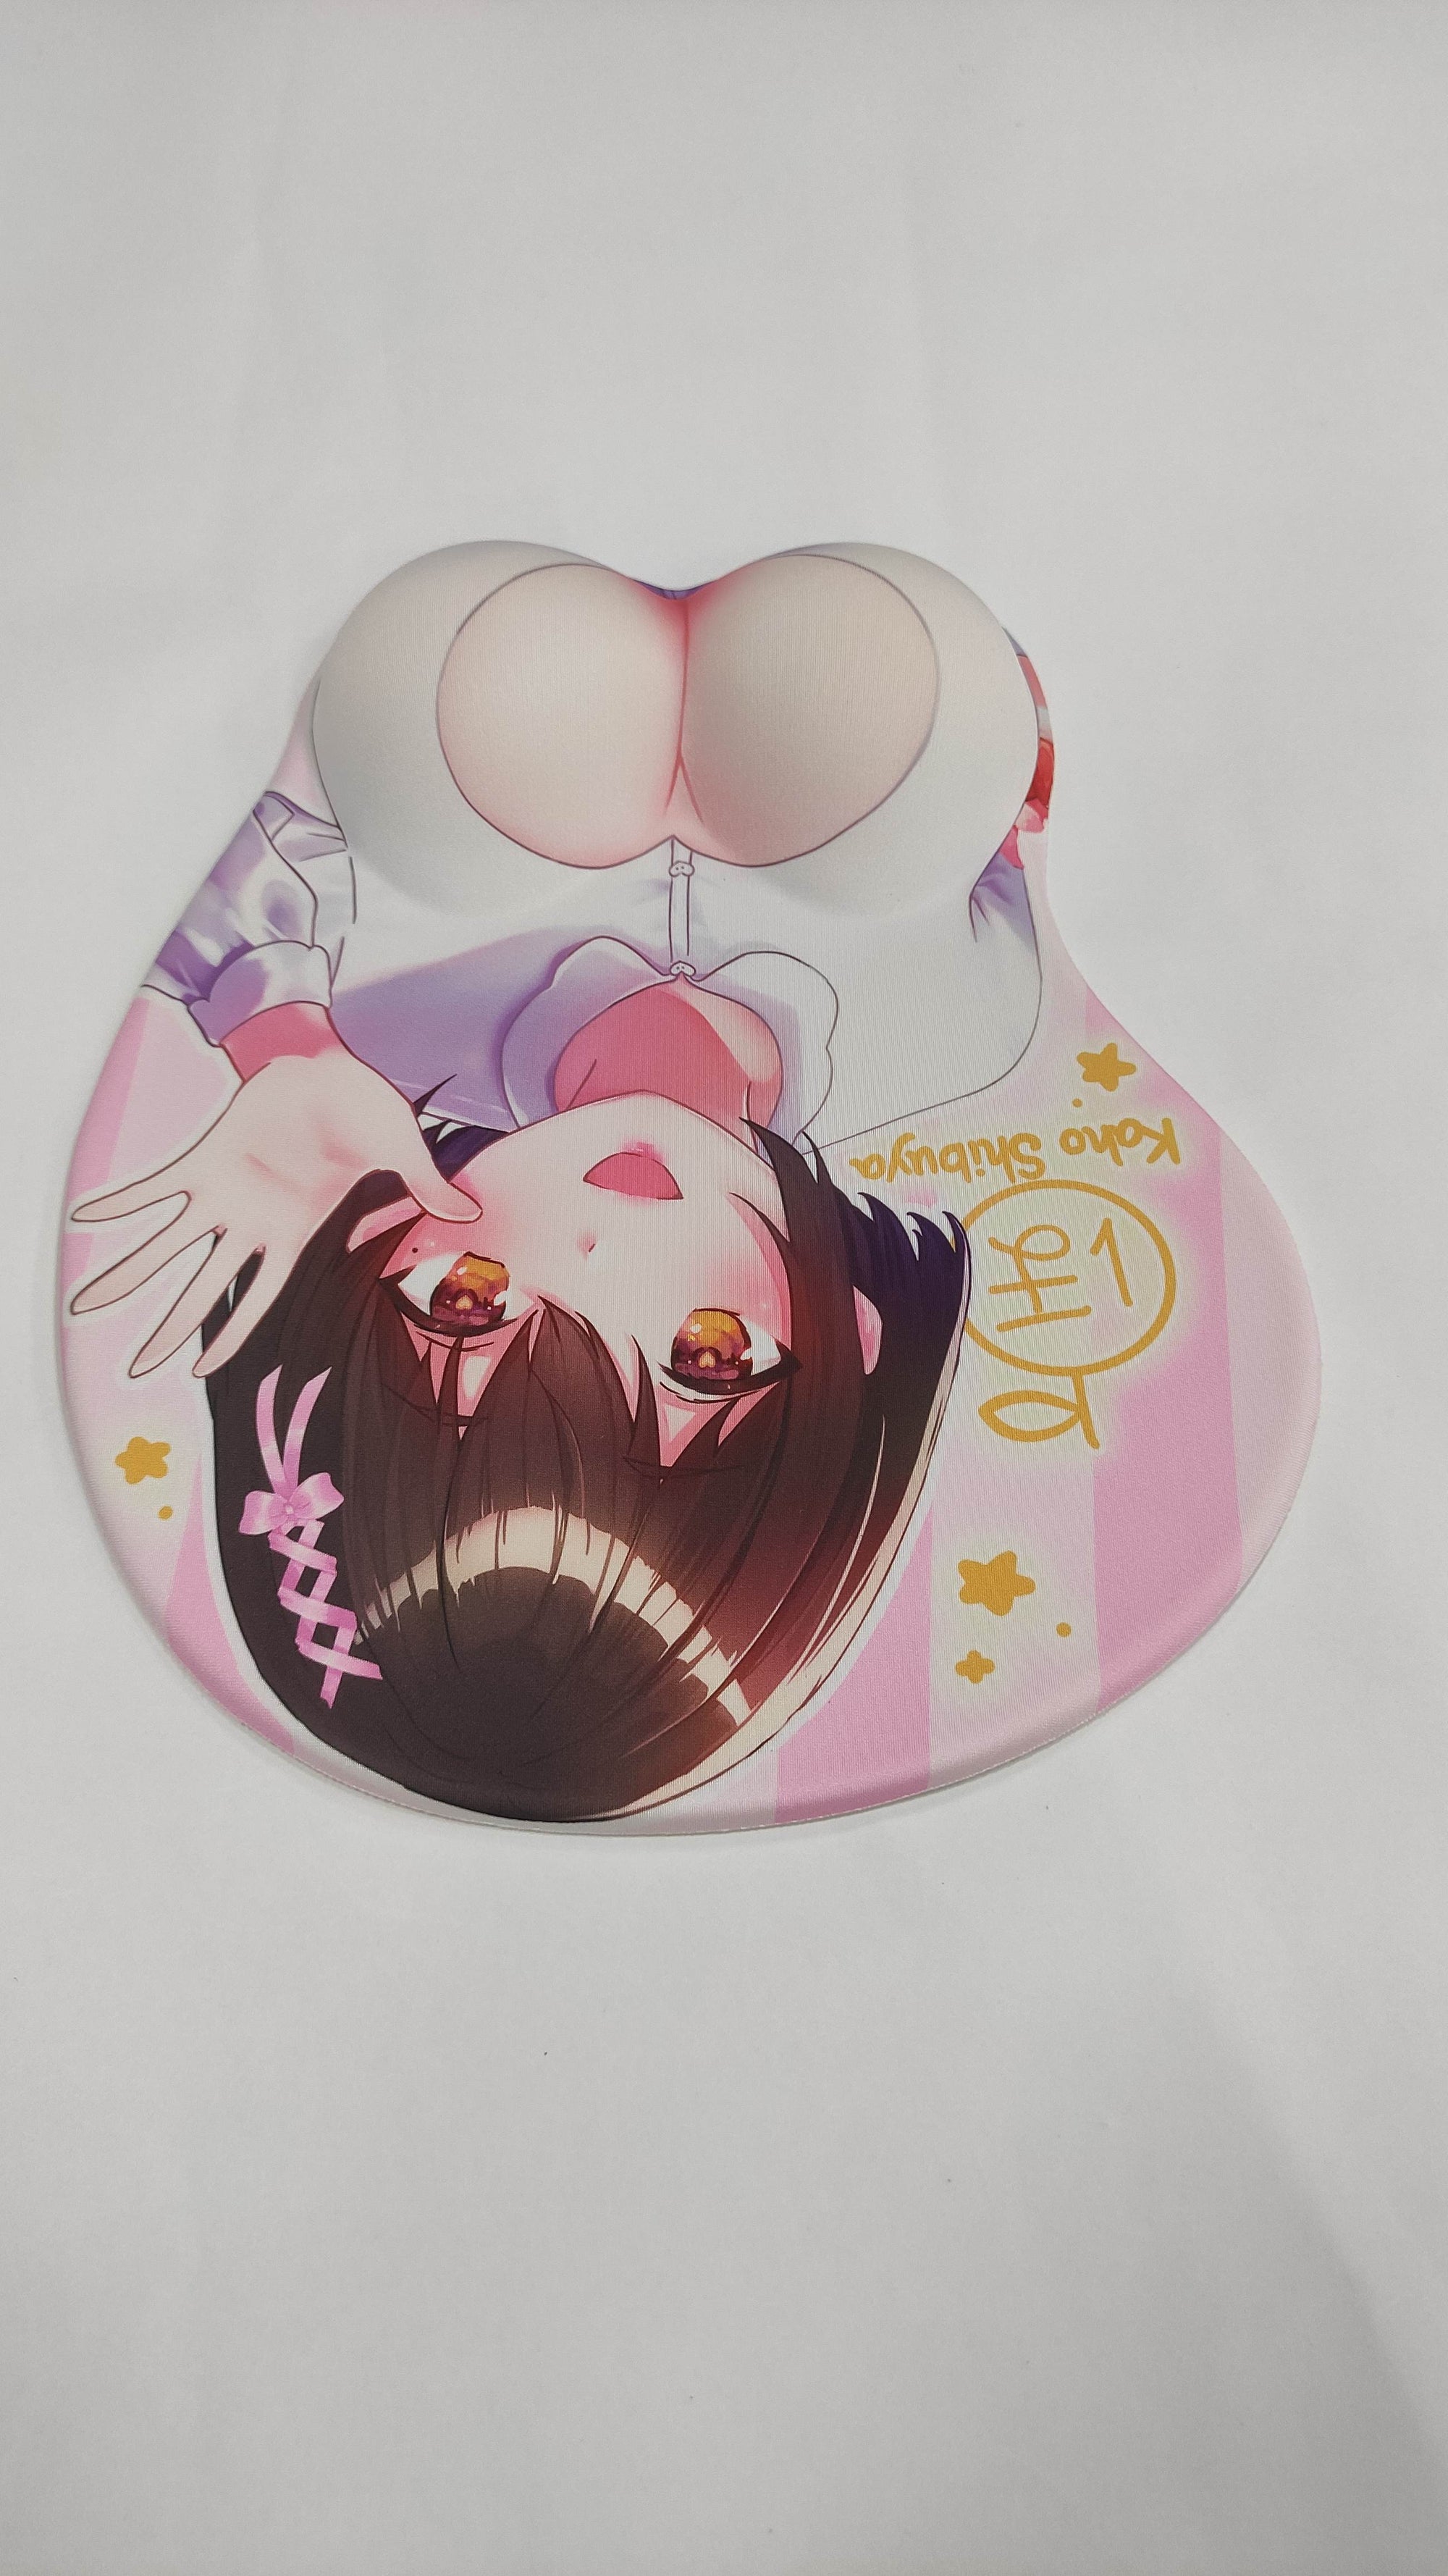 (Pre-Order) Kaho Shibuya Mousepad